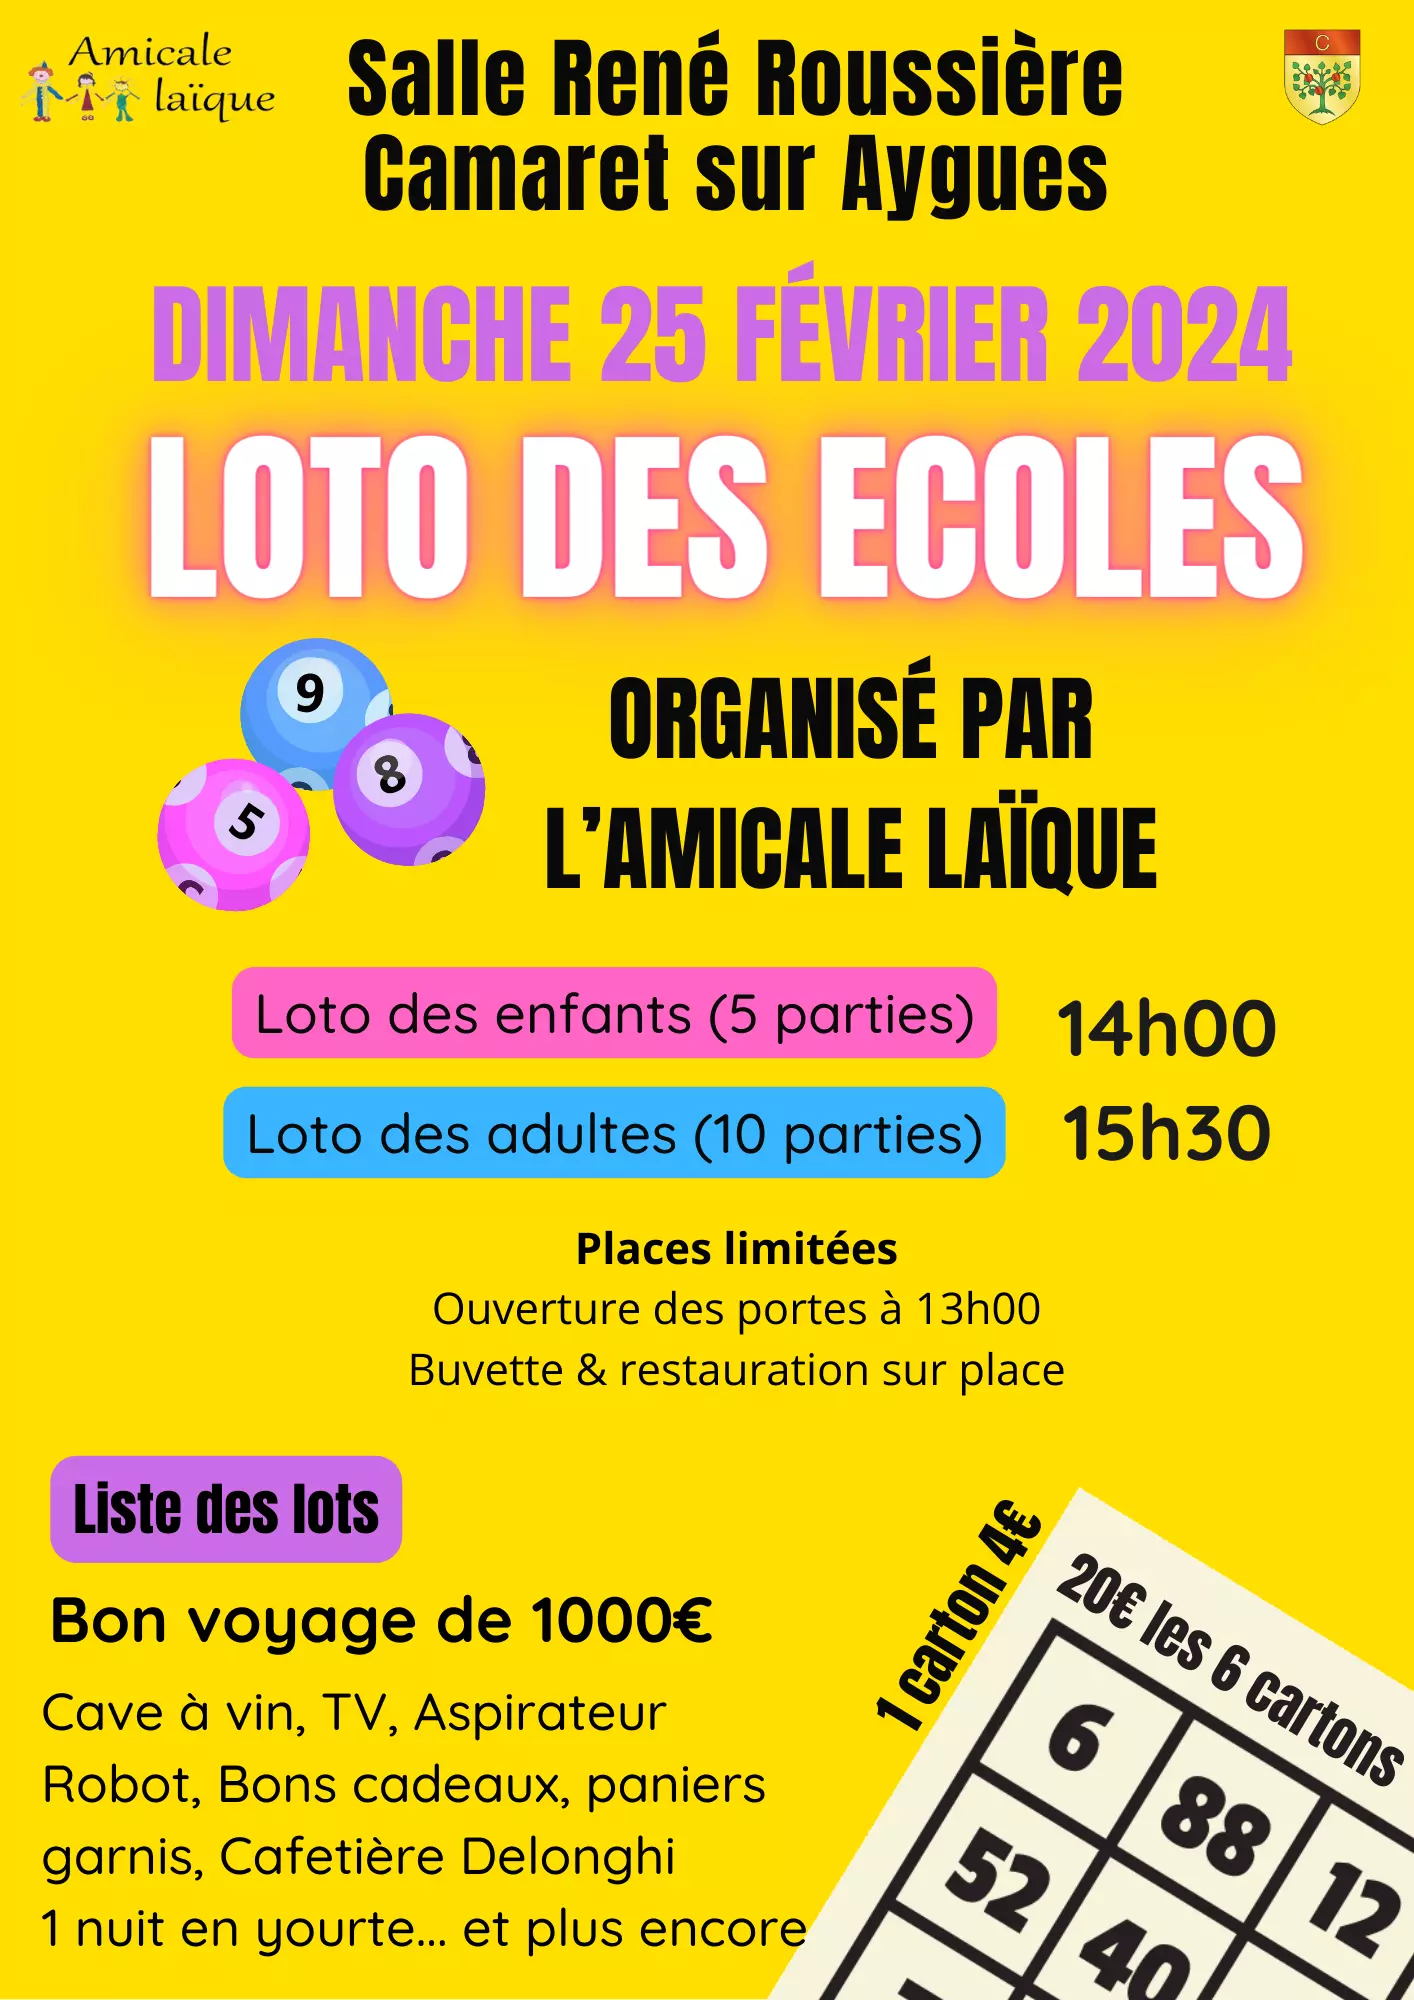 Loto de l'Amicale Laique de Camaret le dimanche 25 février 2024 à 14h00 à la salle René Roussière